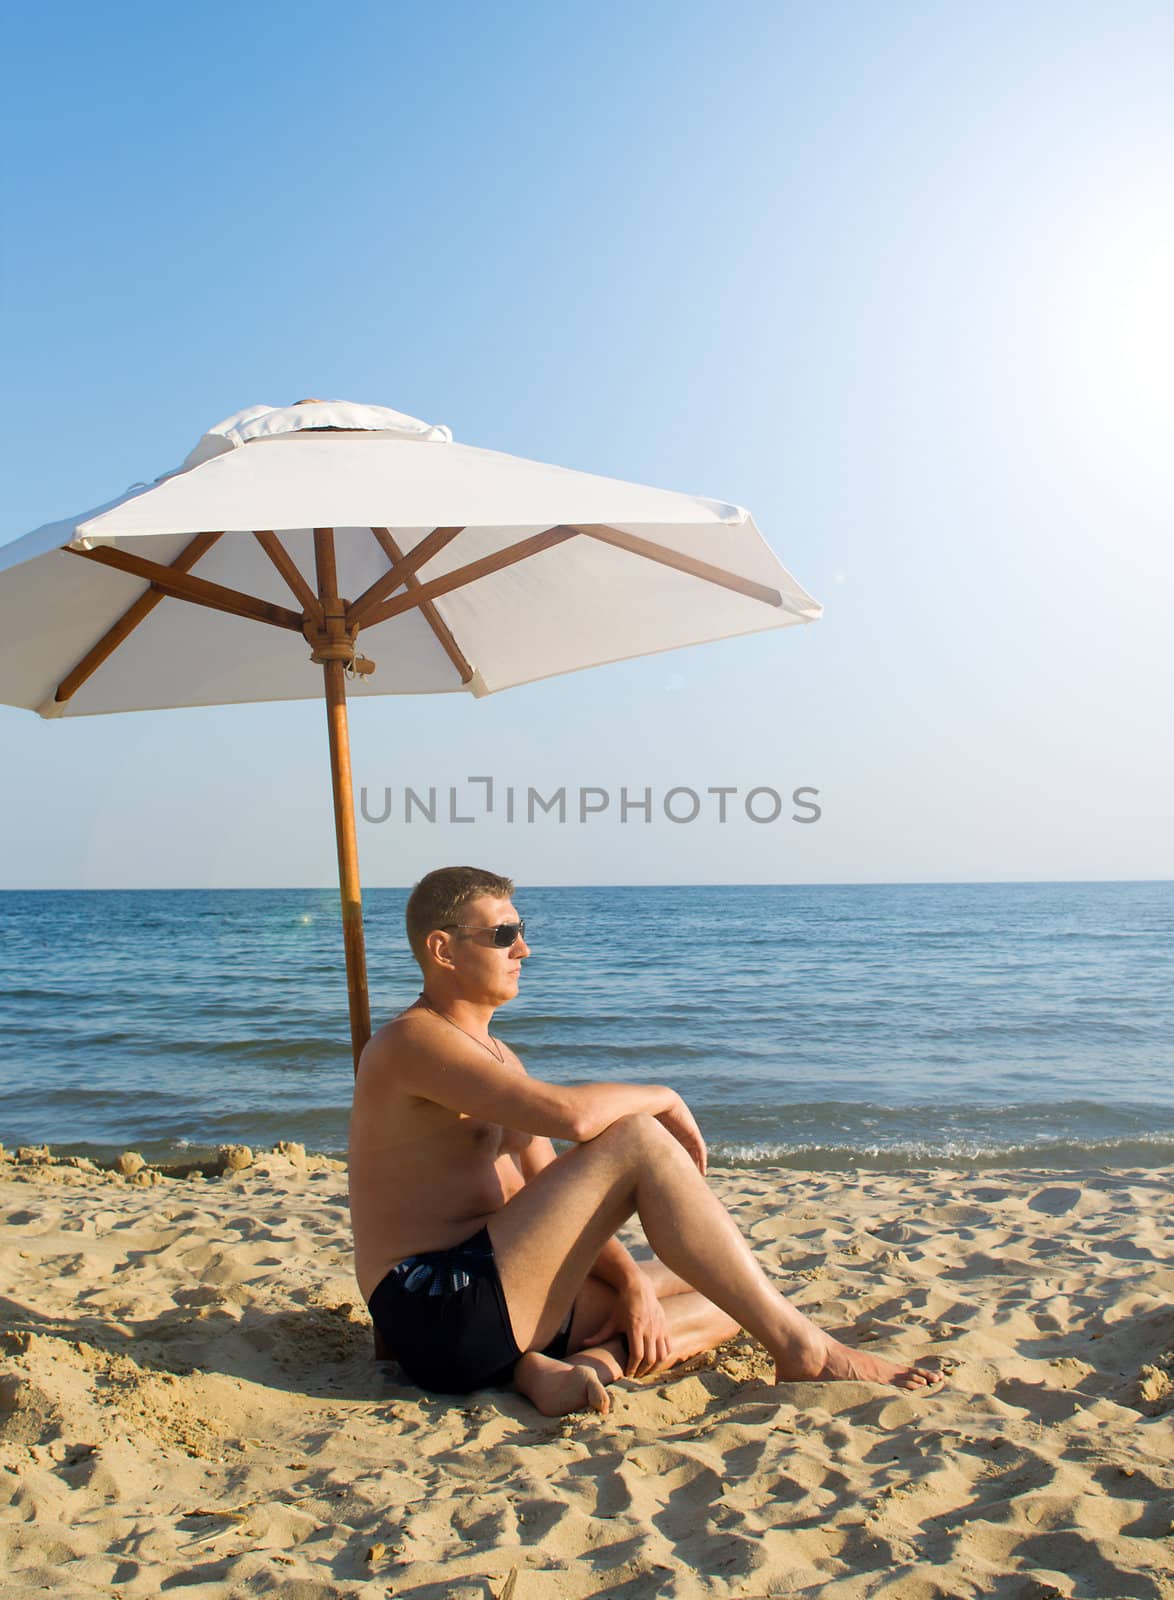 The man under a solar umbrella on a beach by BIG_TAU